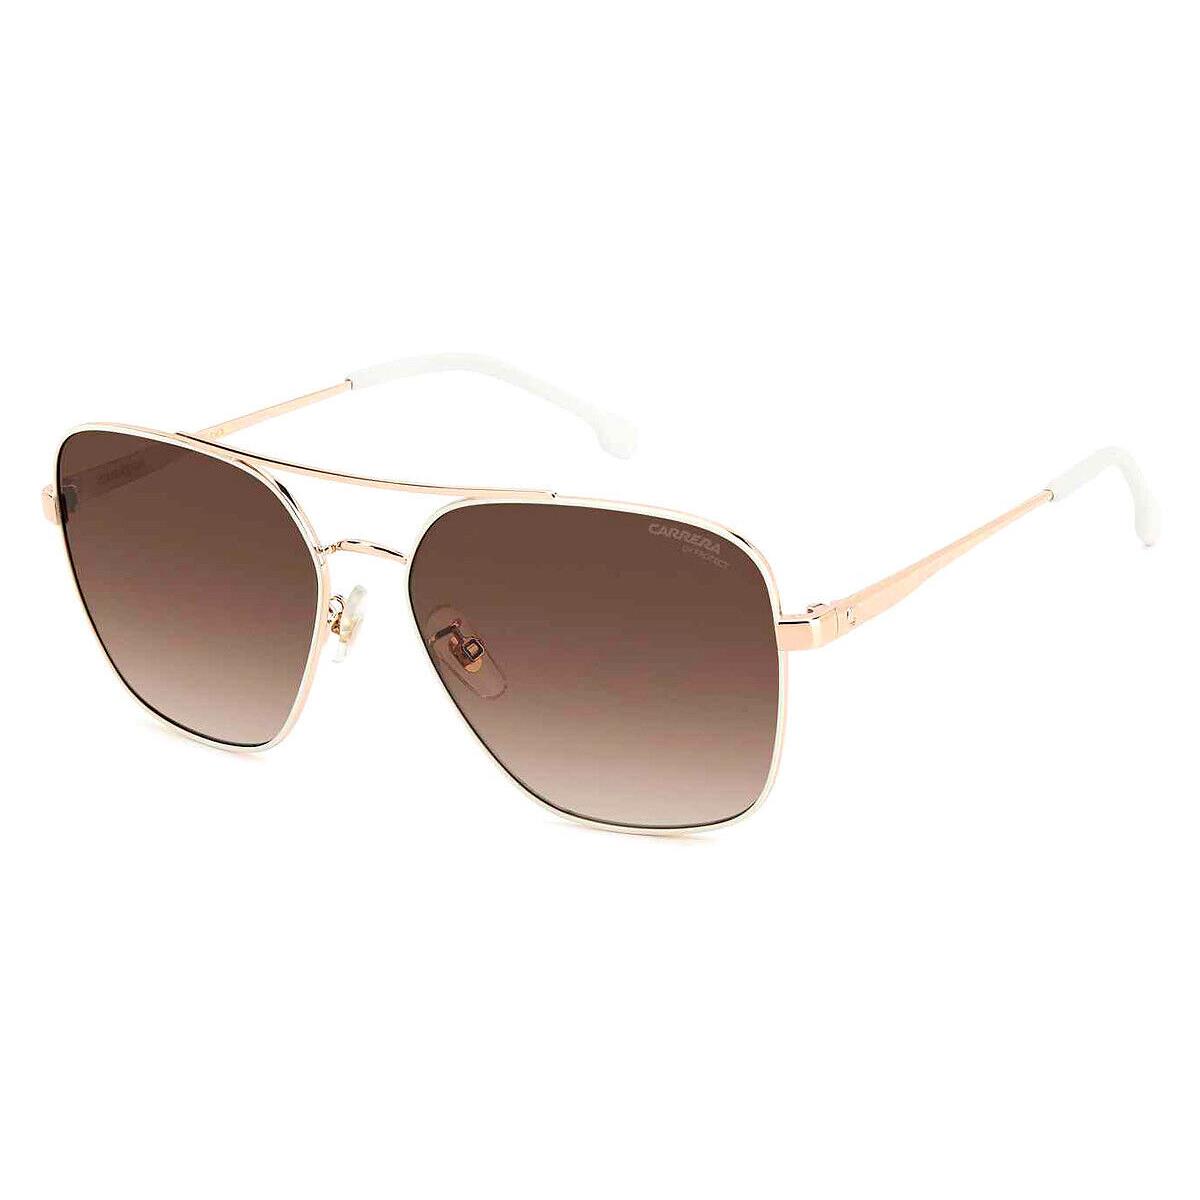 Carrera Car Sunglasses White Copper Gold / Brown Gradient